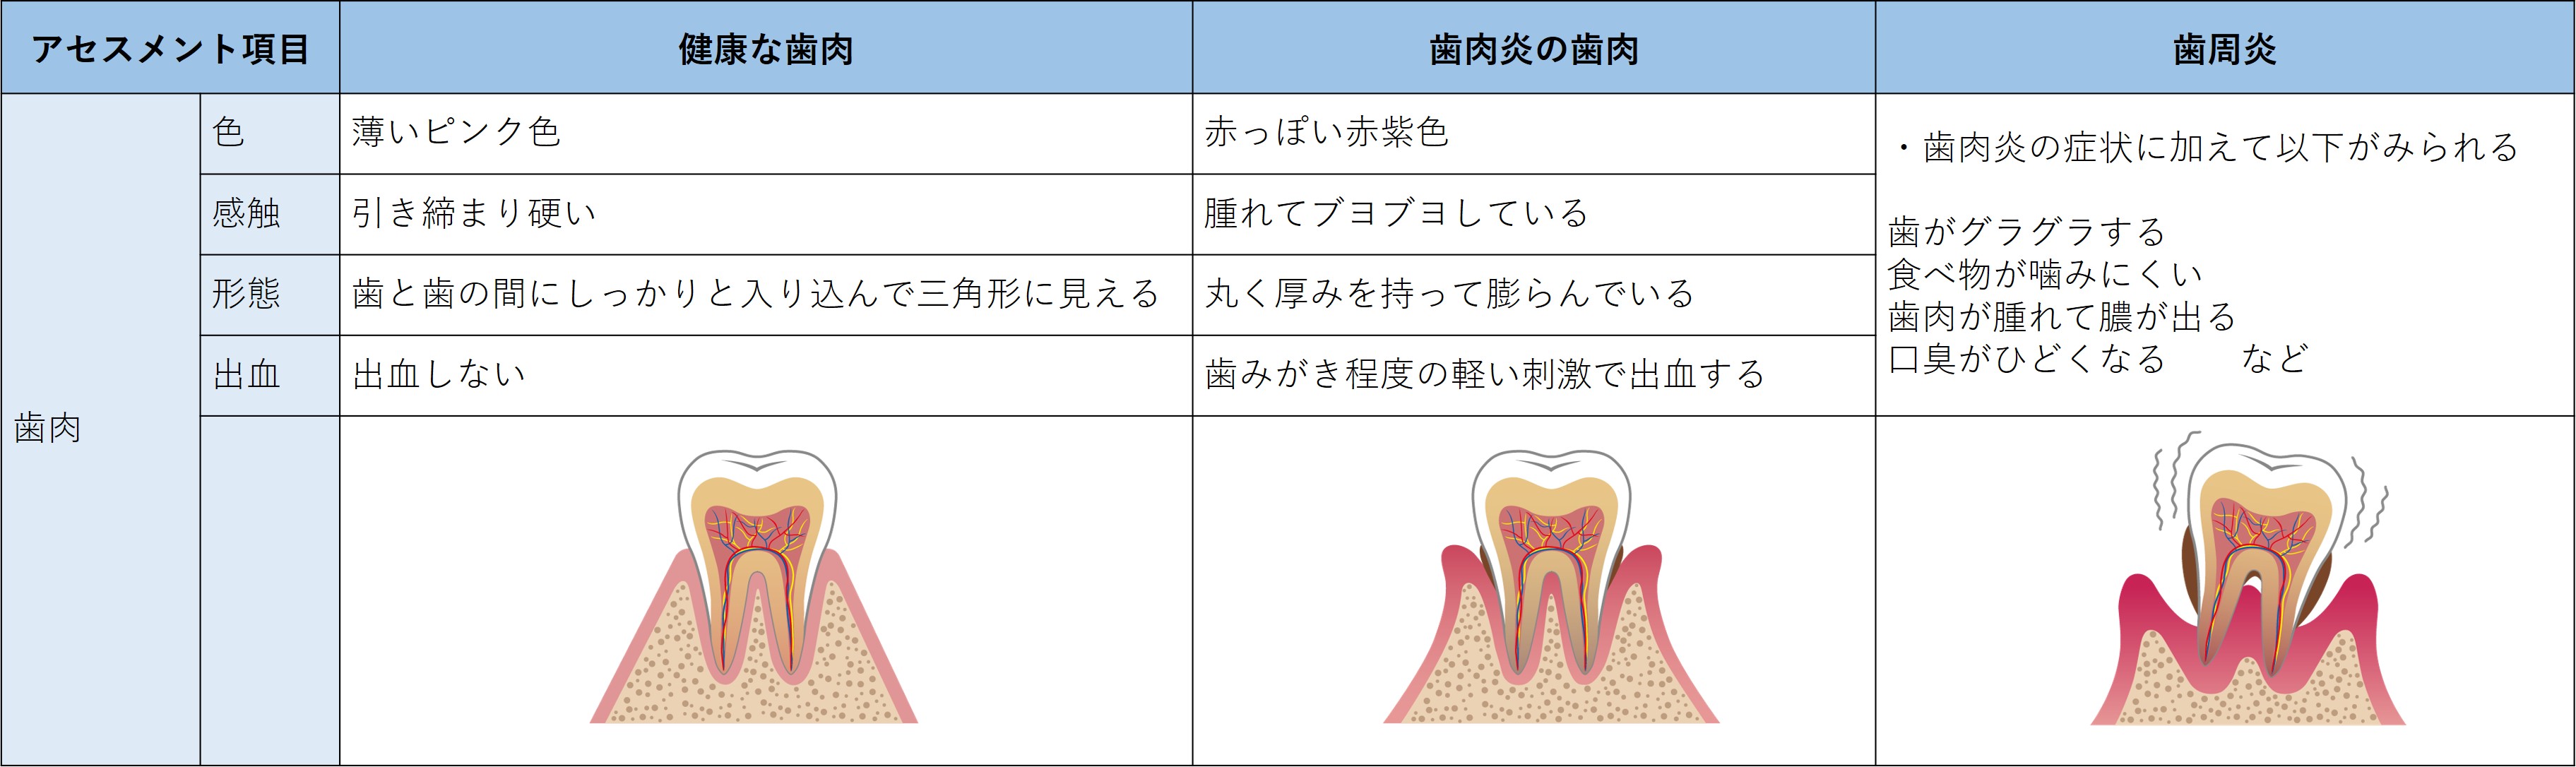 表-口-視診4-歯肉の観察.jpg